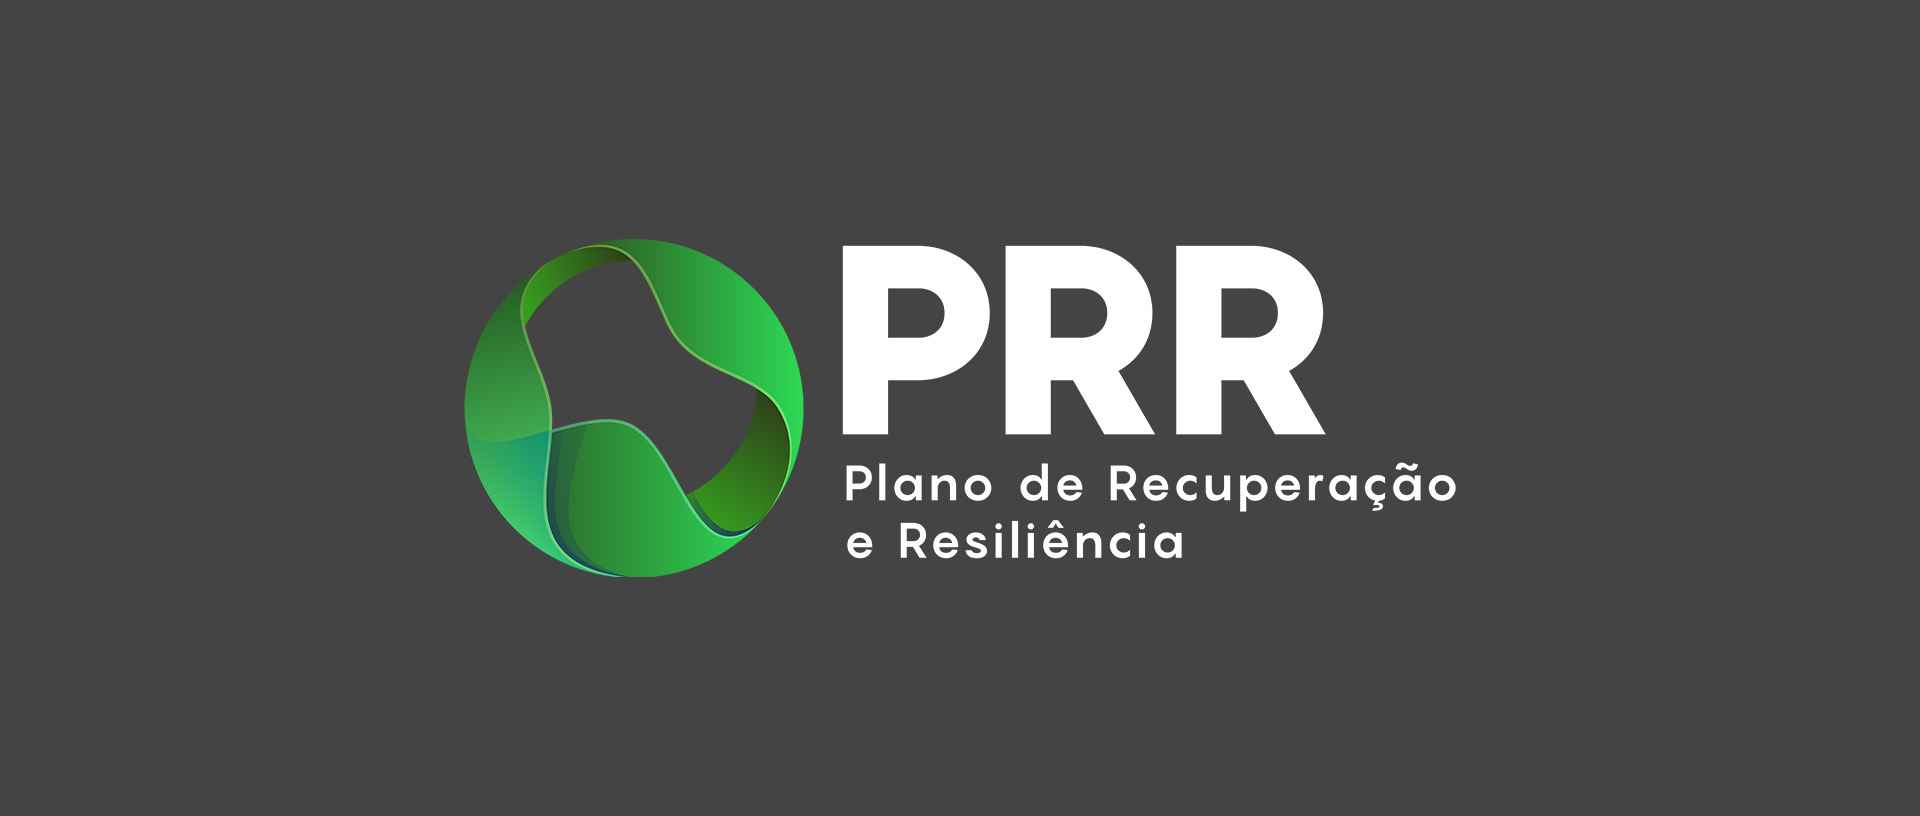 Logótipo do PRR- Plano de Recuperação e Resiliência